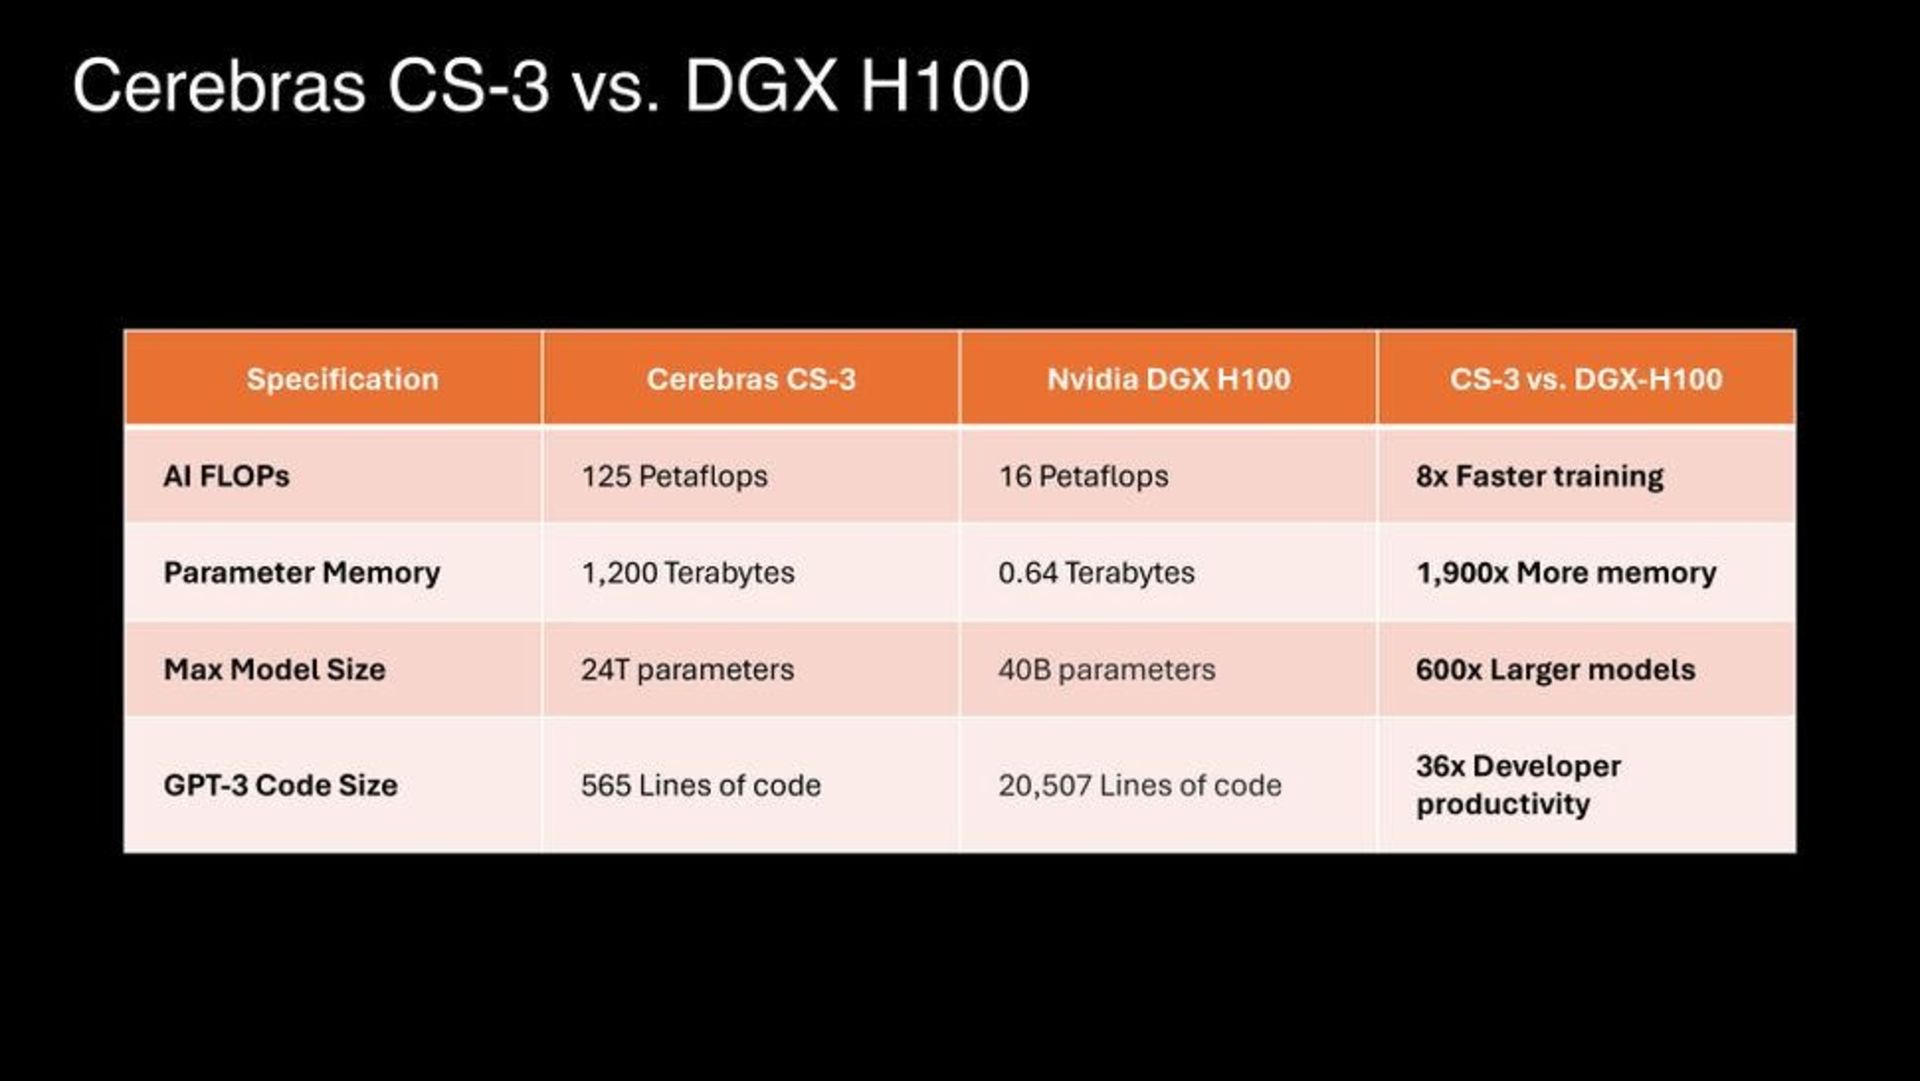 مقایسه مشخصات ابرکامپیوتر CS-3 شرکت Cerebras با برکامپیوتر DGX H100 شرکت Nvidia